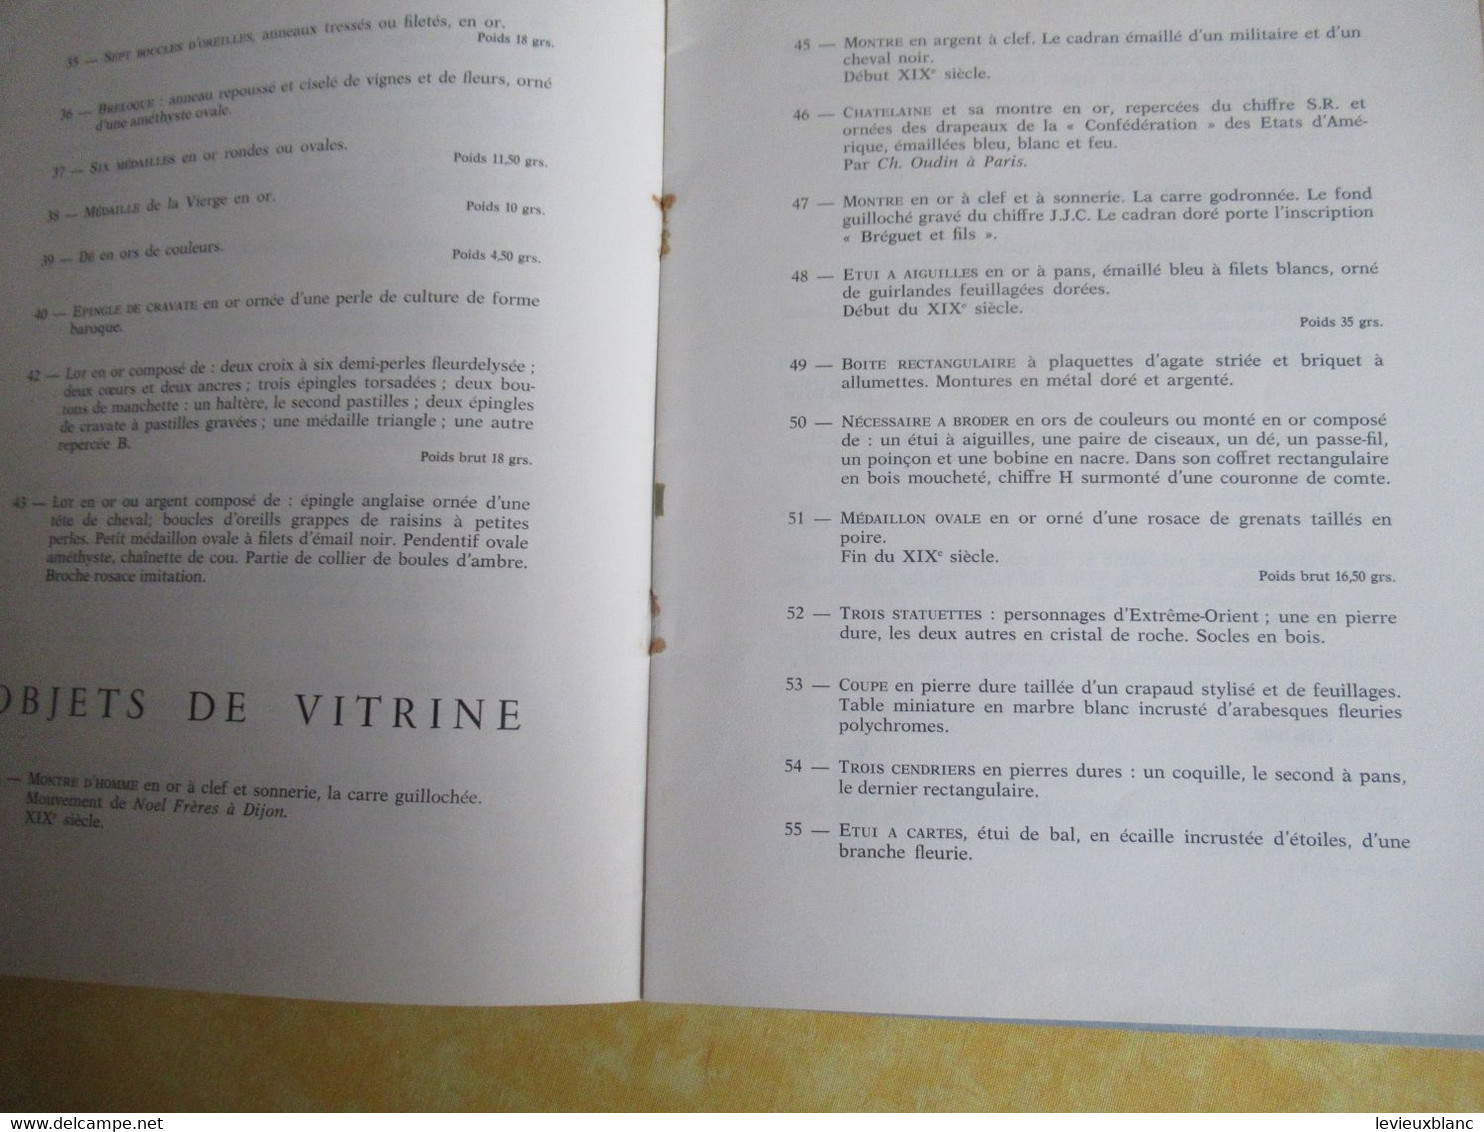 Vente Aux Enchères /Hôtel DROUOT/ Bijoux, Argenterie,Objets De Vitrine / ADER-PICARD/1971  CAT292 - Zeitschriften & Kataloge